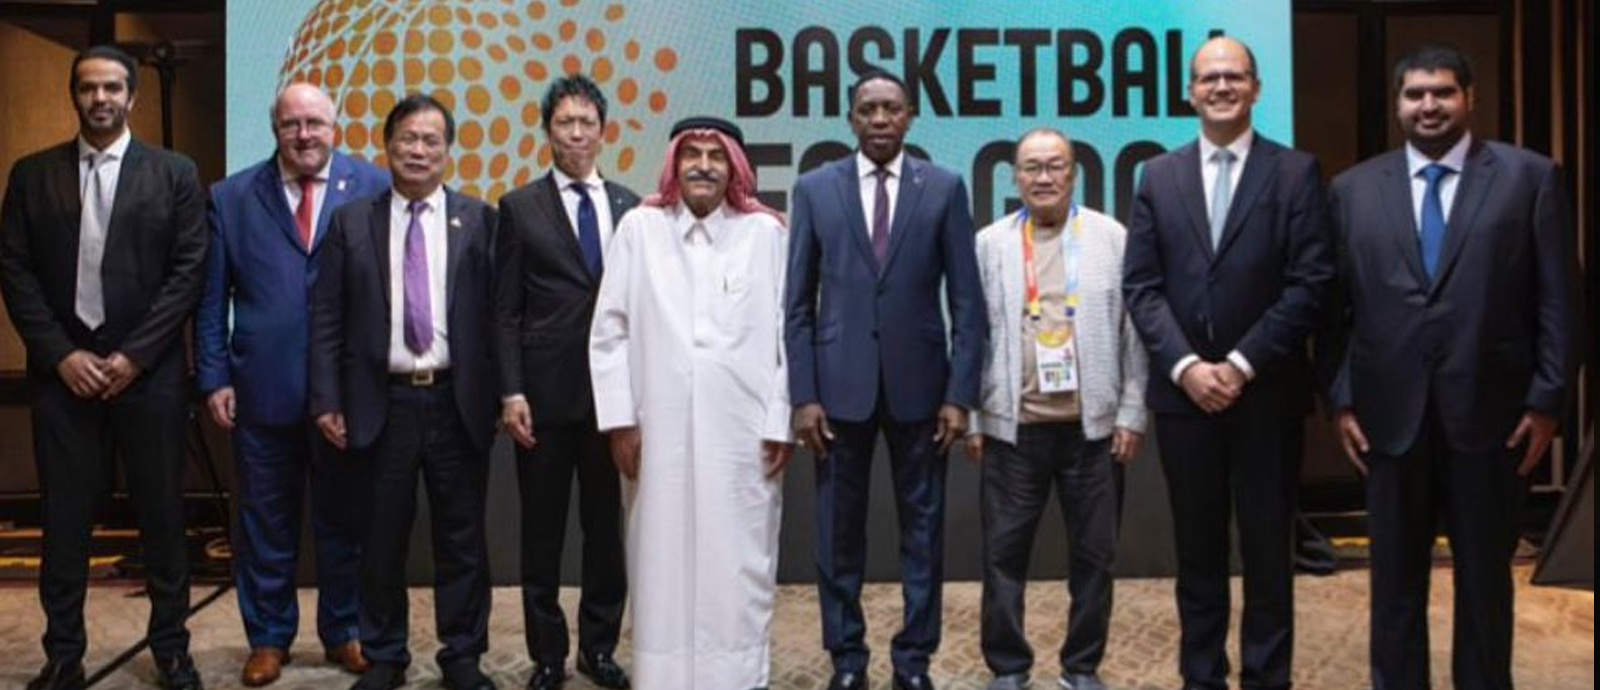 تعيين الشيخ سعود بن علي والمغيصيب في عضوية مجلس إدارة الهيئة الدولية لكرة السلة